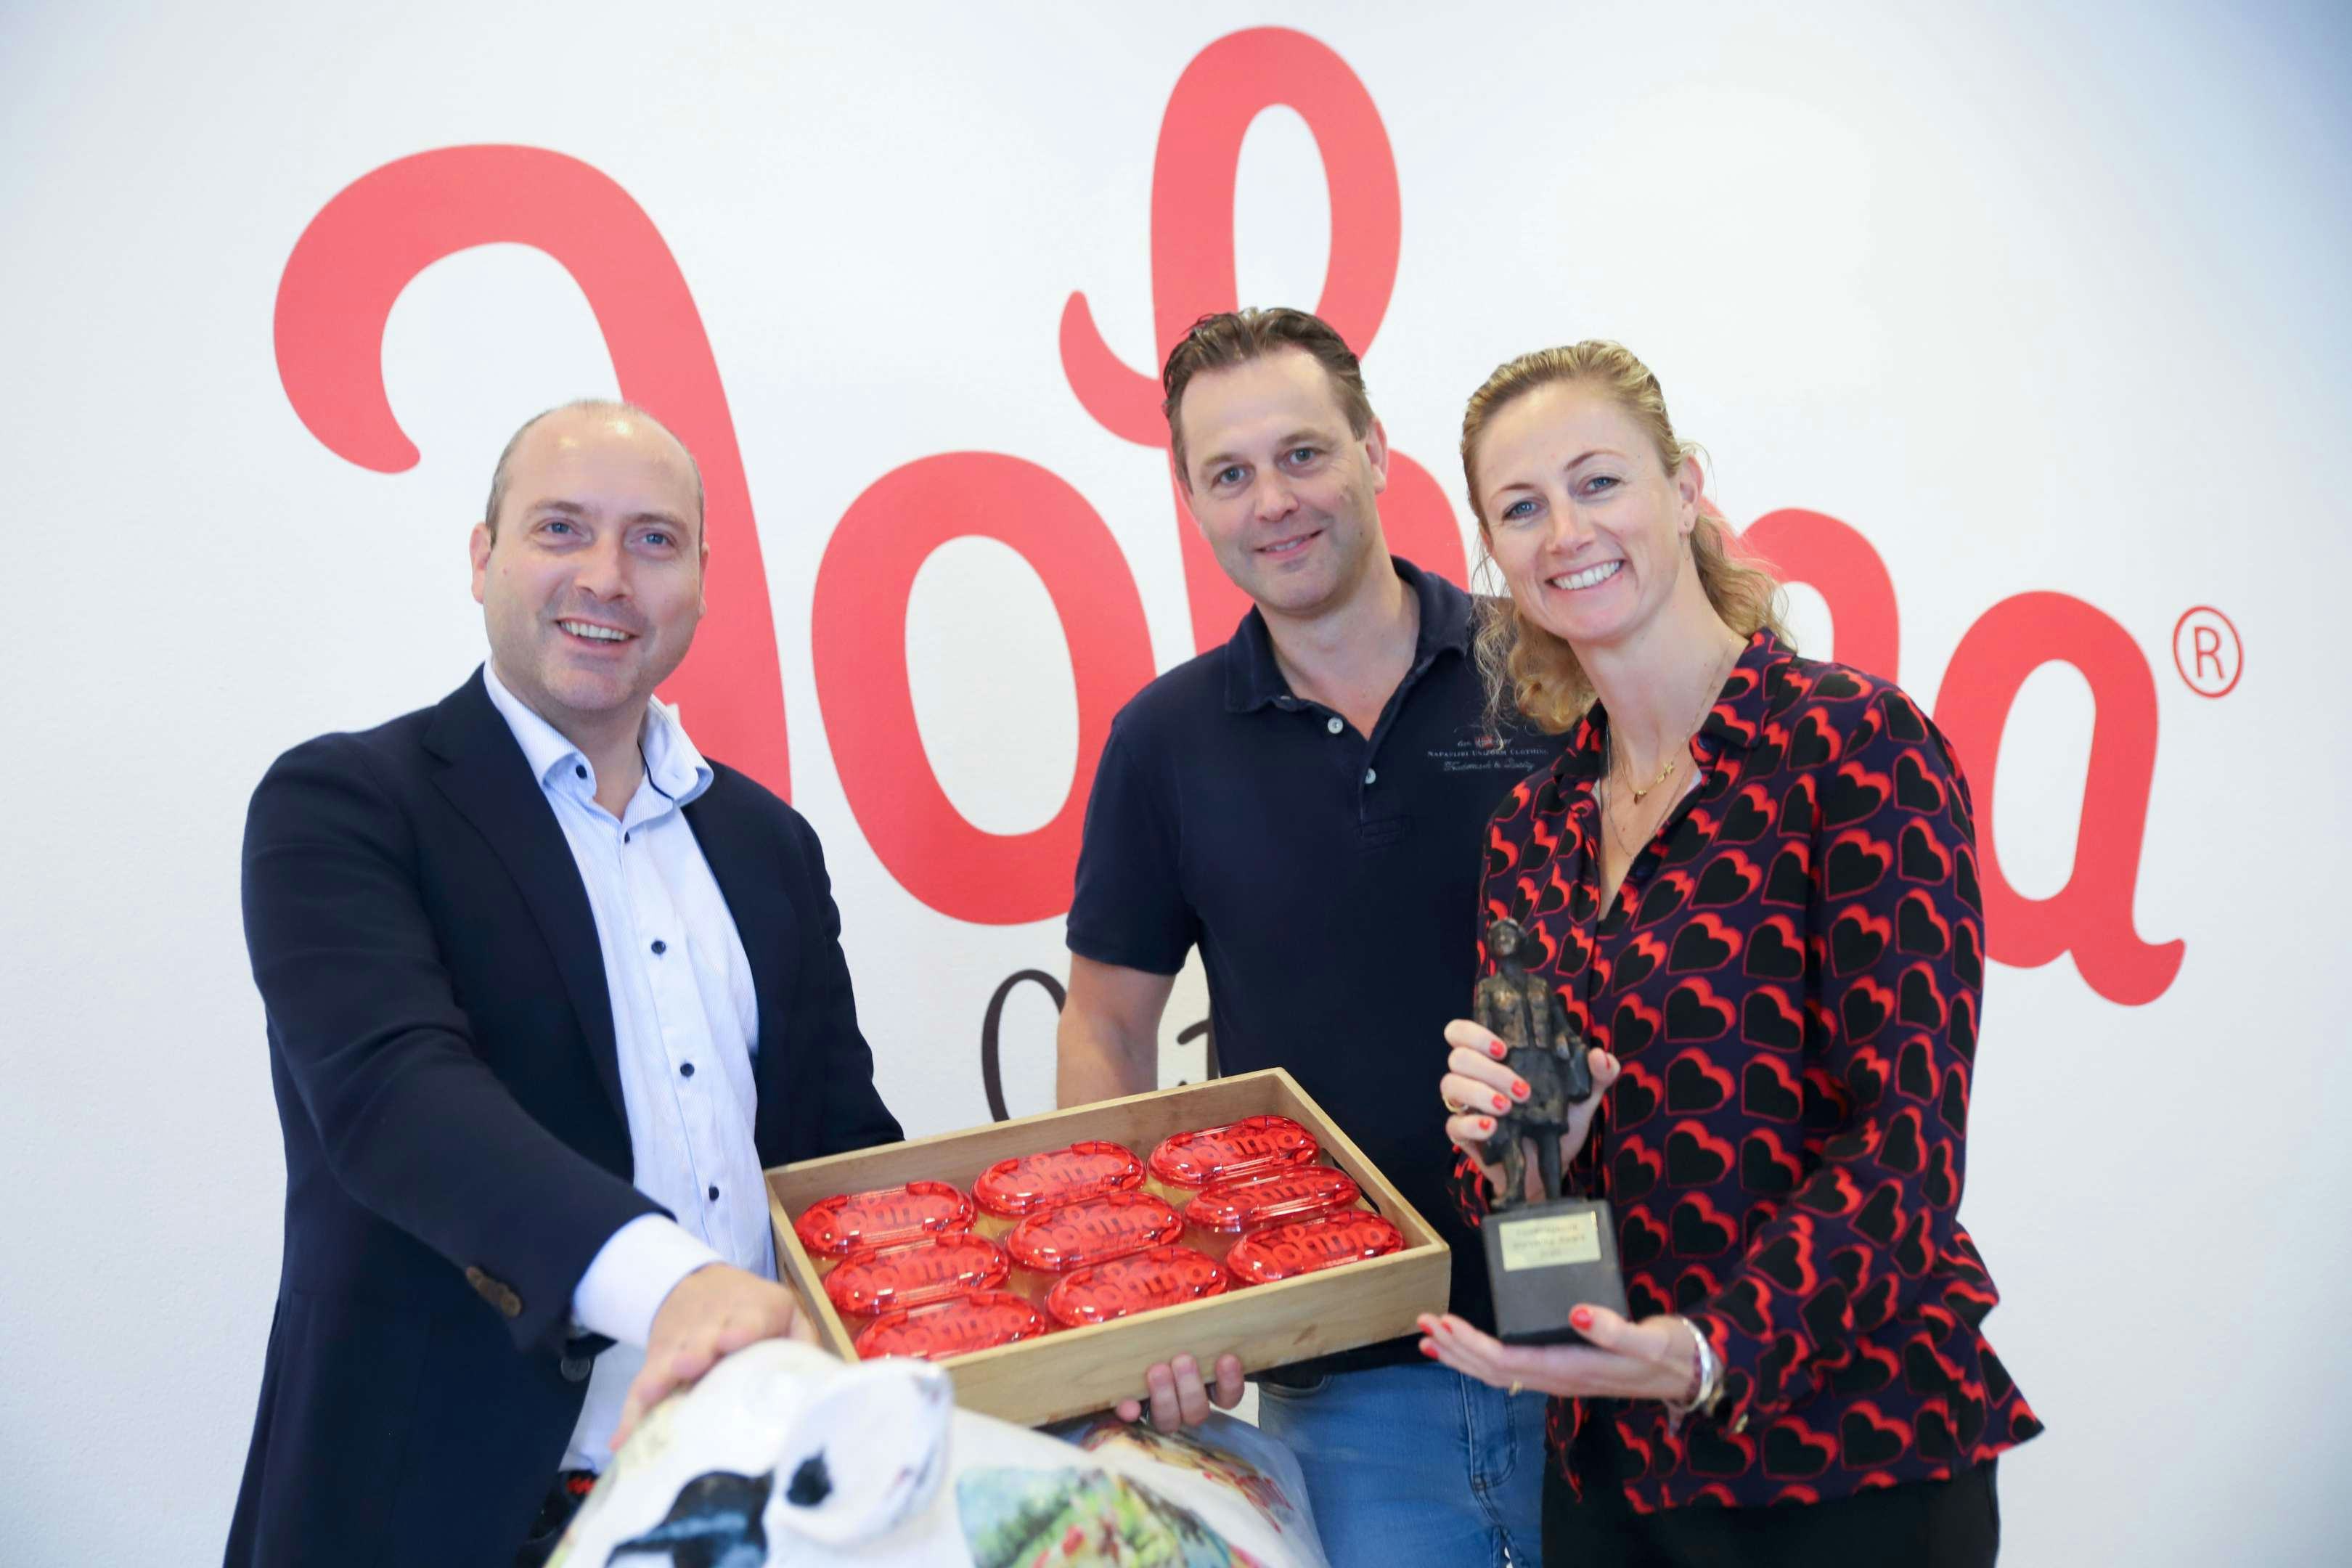 Het team van Johma, met ceo Thomas van Hemert, René Gerrietsen (sales director retail) en Karin Bronsvoort (marketing director). Foto's: Michel Zoeter